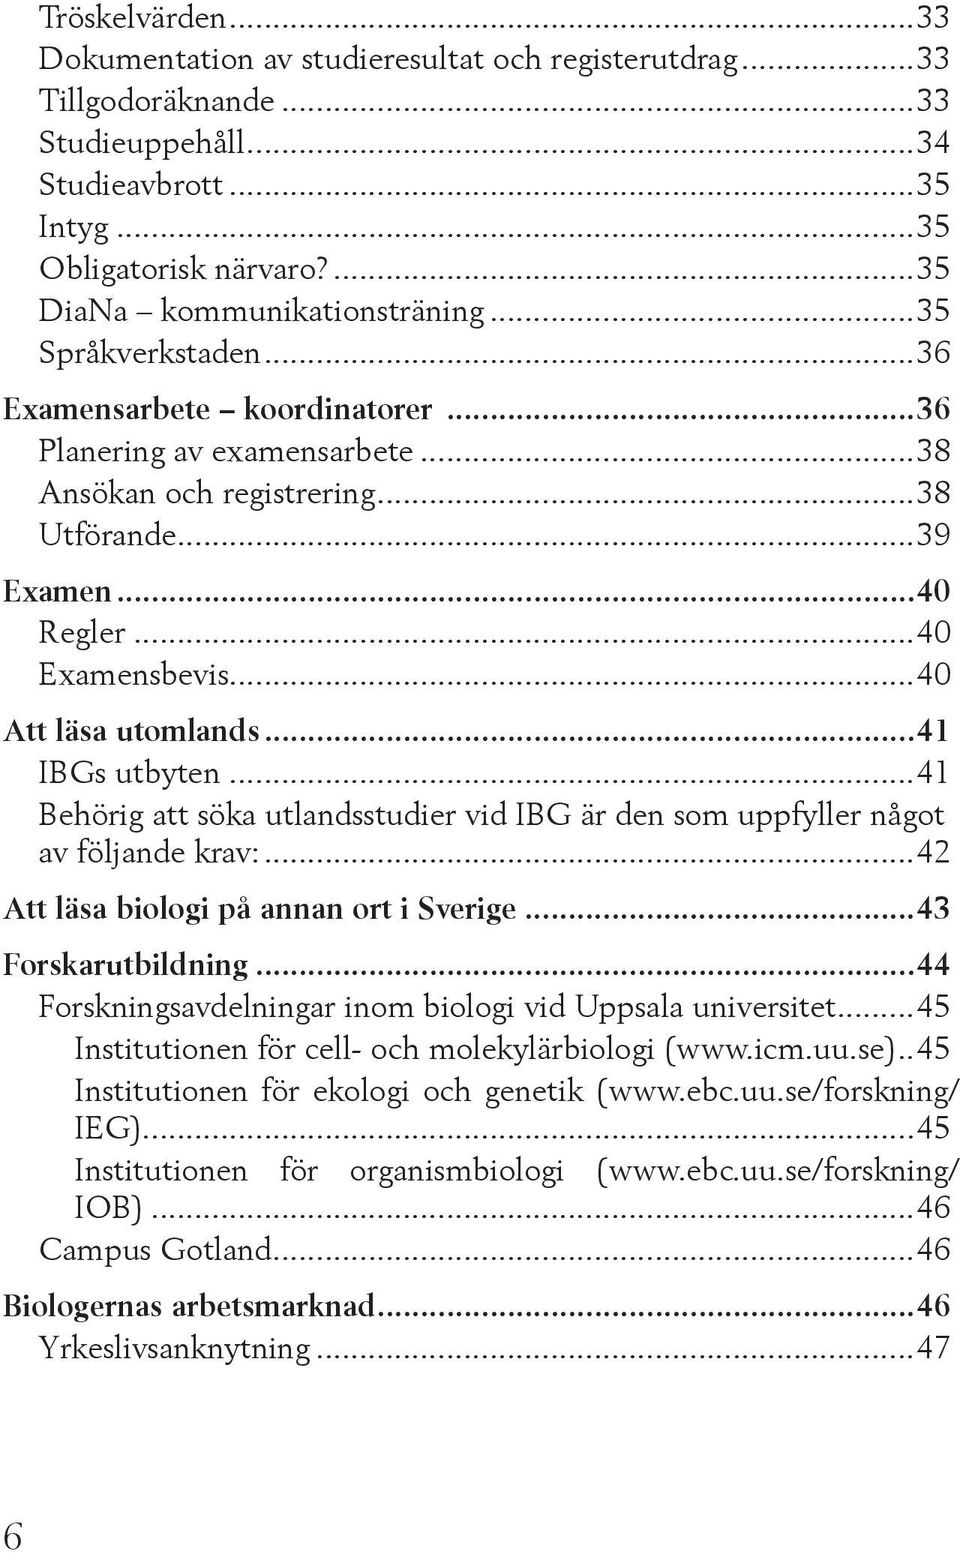 ..41 IBGs utbyten...41 Behörig att söka utlandsstudier vid IBG är den som uppfyller något av följande krav:...42 Att läsa biologi på annan ort i Sverige...43 Forskarutbildning.